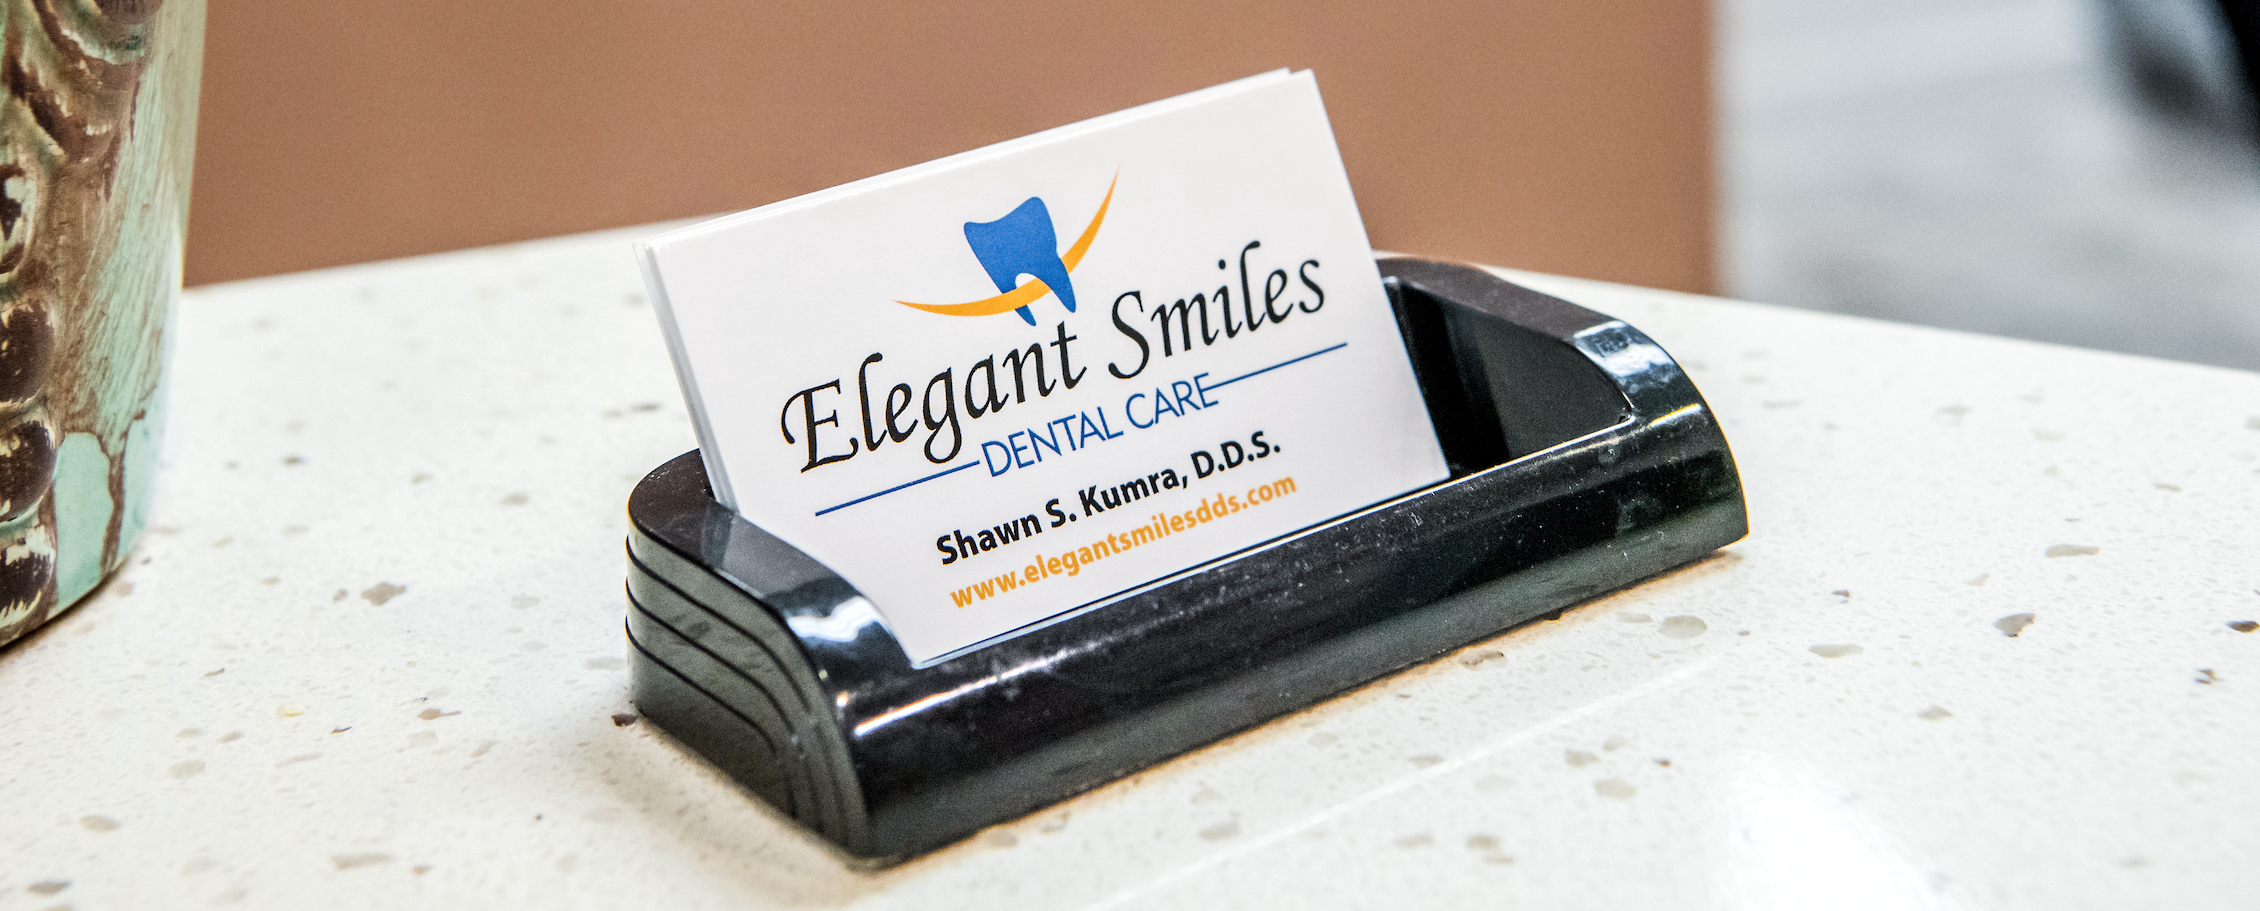 Elegant Smiles Dental Care Business Card